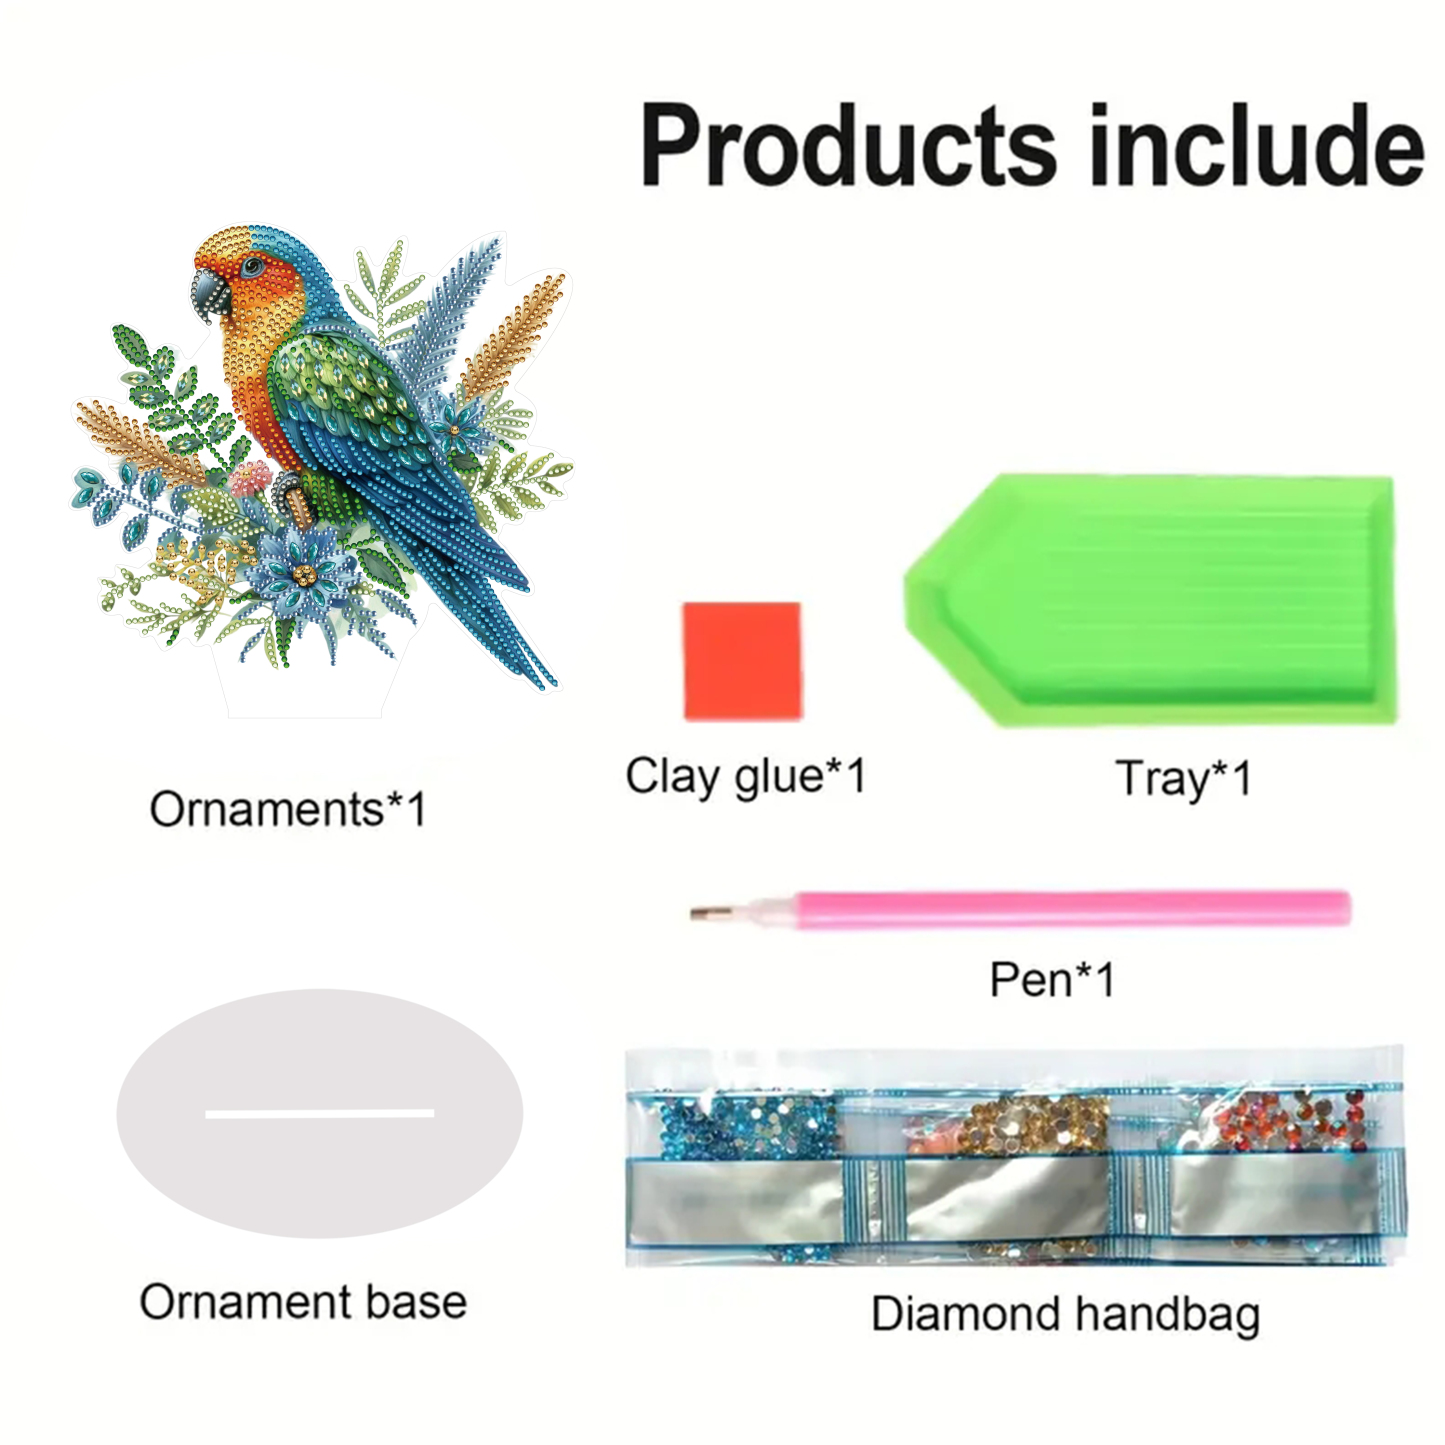 5D DIY Special Shape Diamond Painting Desk Ornament Parrot Decor Kit